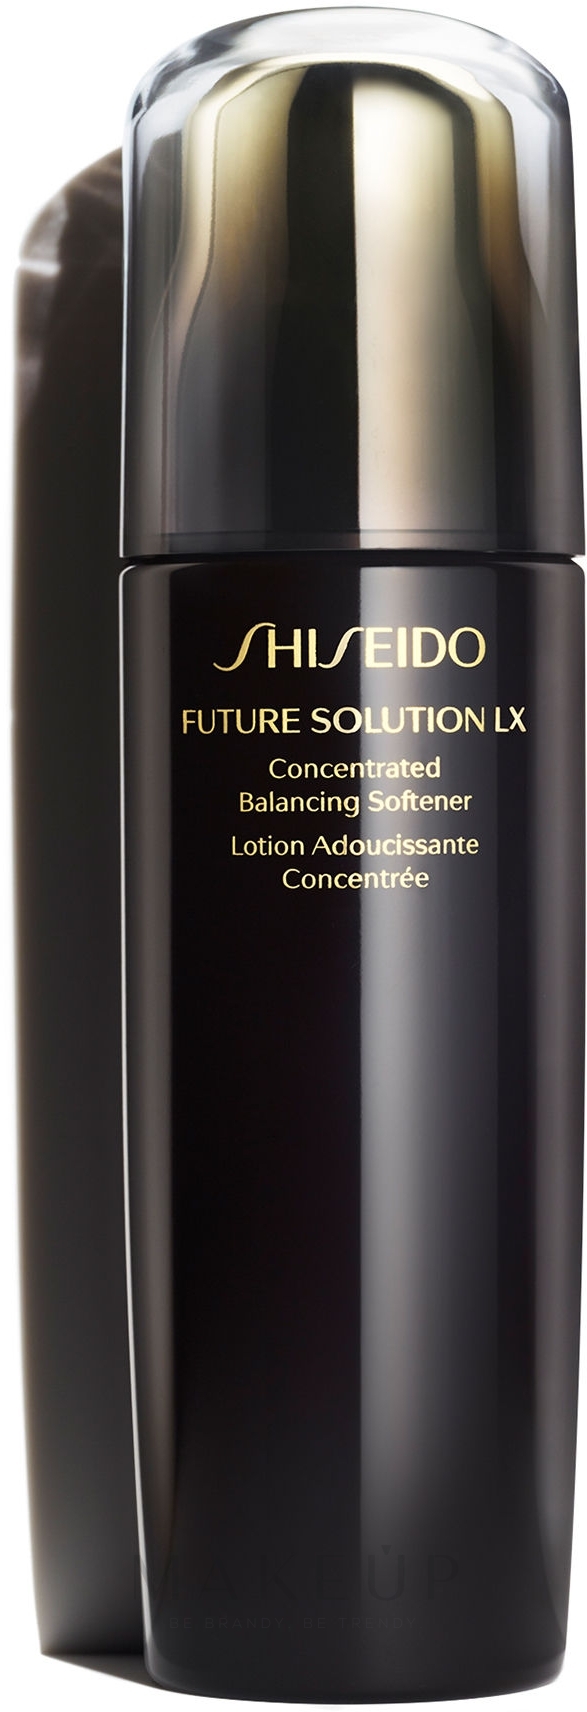 Feuchtigkeitsspendende konzentrierte Gesichtslotion - Shiseido Future Solution LX Concentrated Balancing Softener — Foto 170 ml